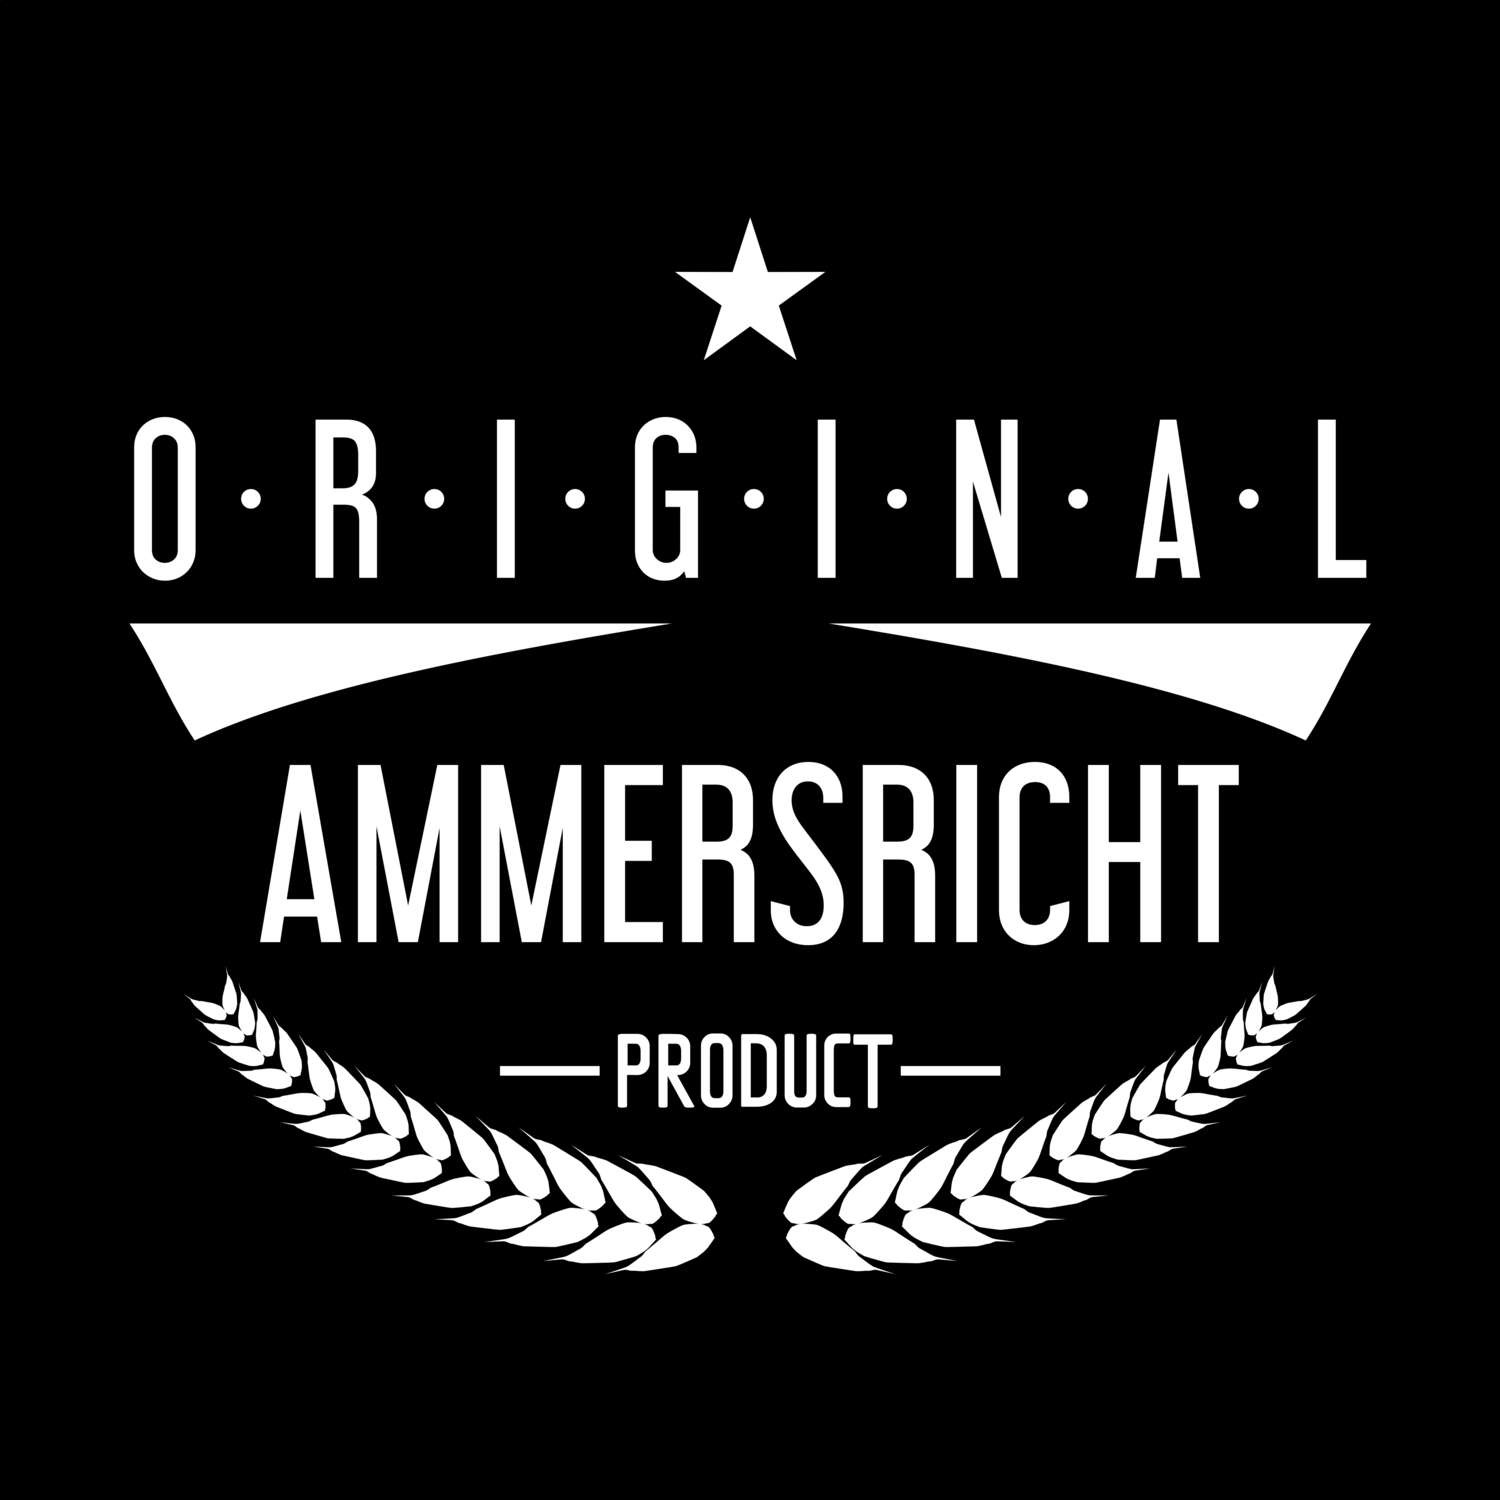 Ammersricht T-Shirt »Original Product«